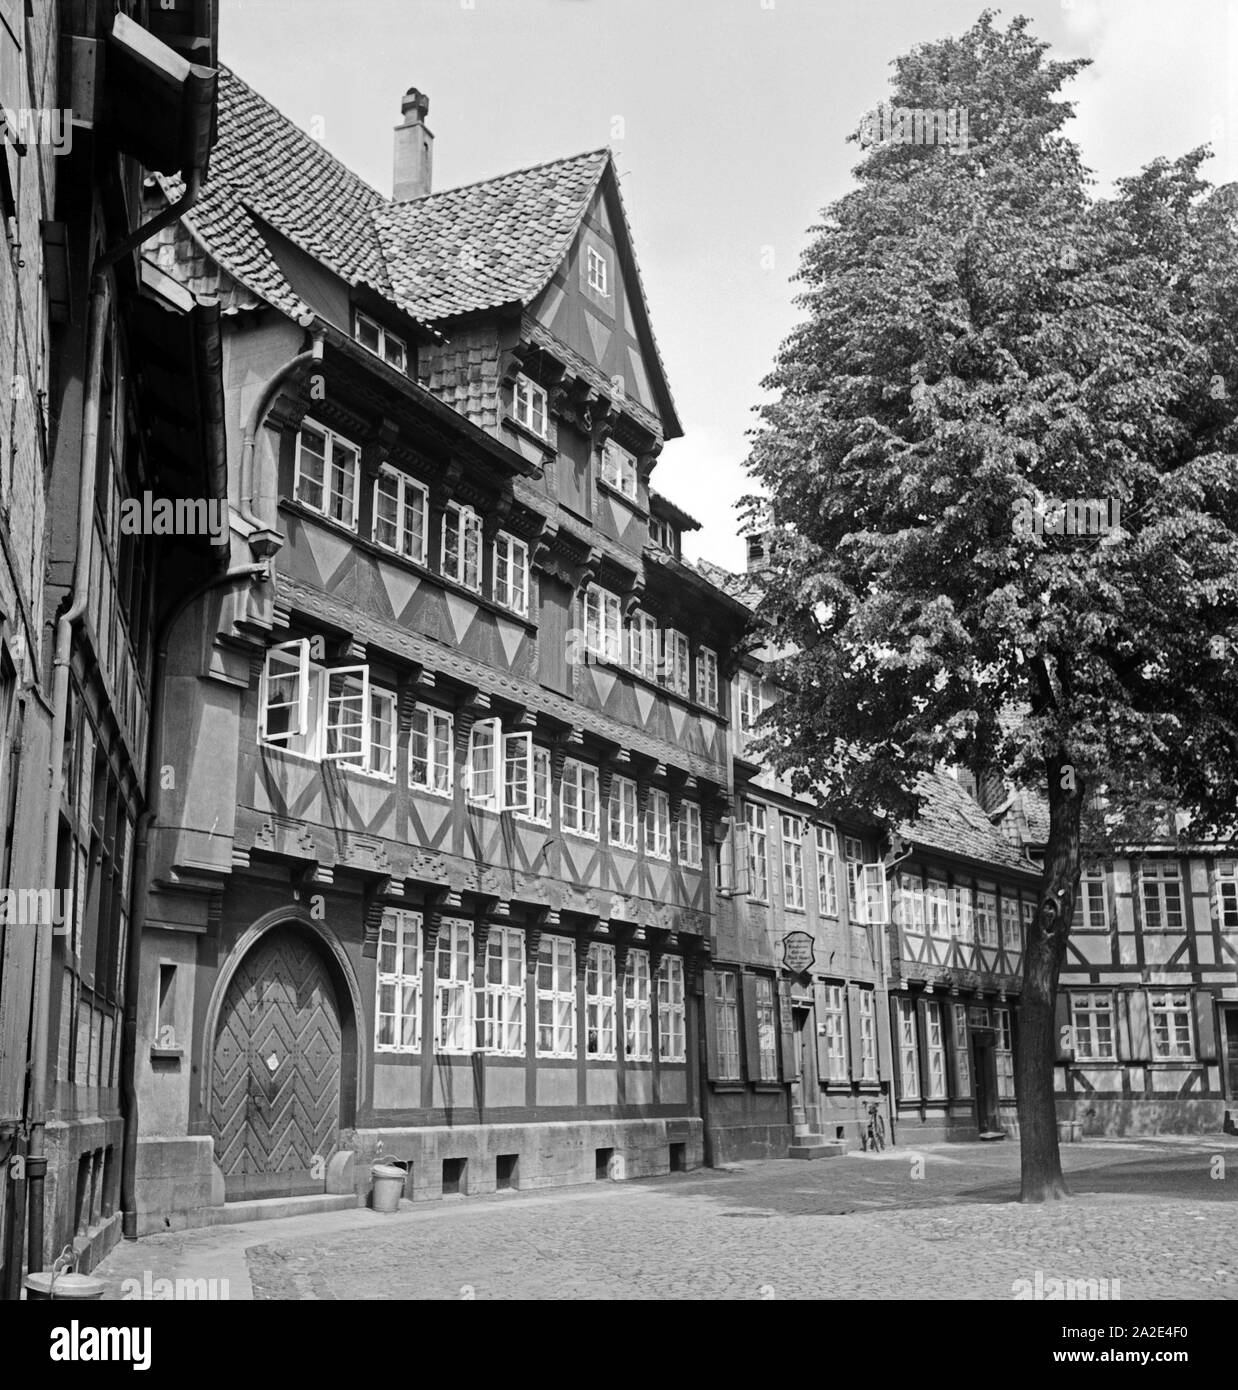 Stattliches Fachwerkhaus in der Altstadt von Braunschweig, Deutschland 1930er Jahre. Riesige Fachwerkhaus in der Altstadt von Braunschweig, Deutschland 1930. Stockfoto